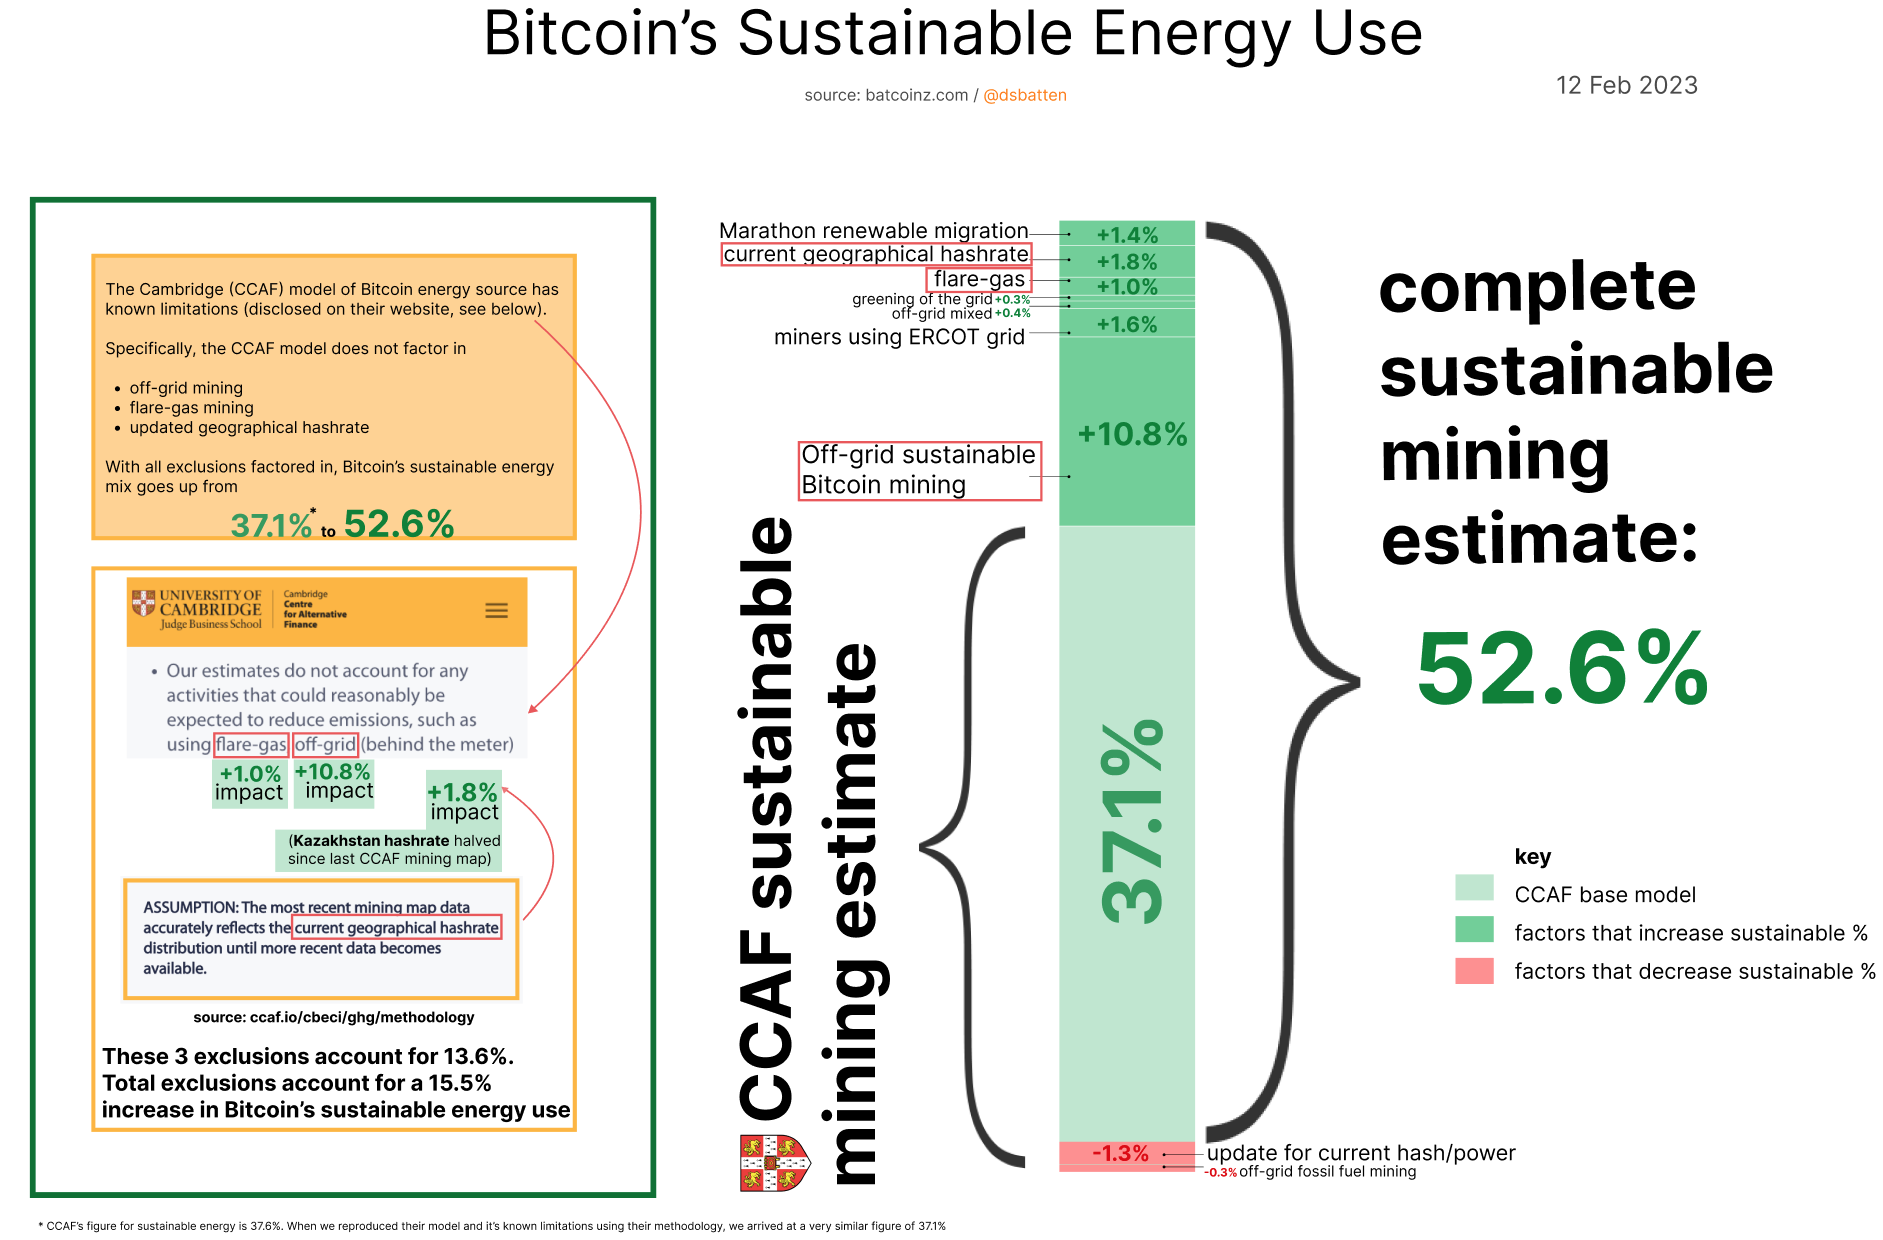 ESG-Analyst Daniel Batten enthüllt dynamische Diagramme, die Bitcoins nachhaltigen Energieverbrauch von 52,6 % zeigen